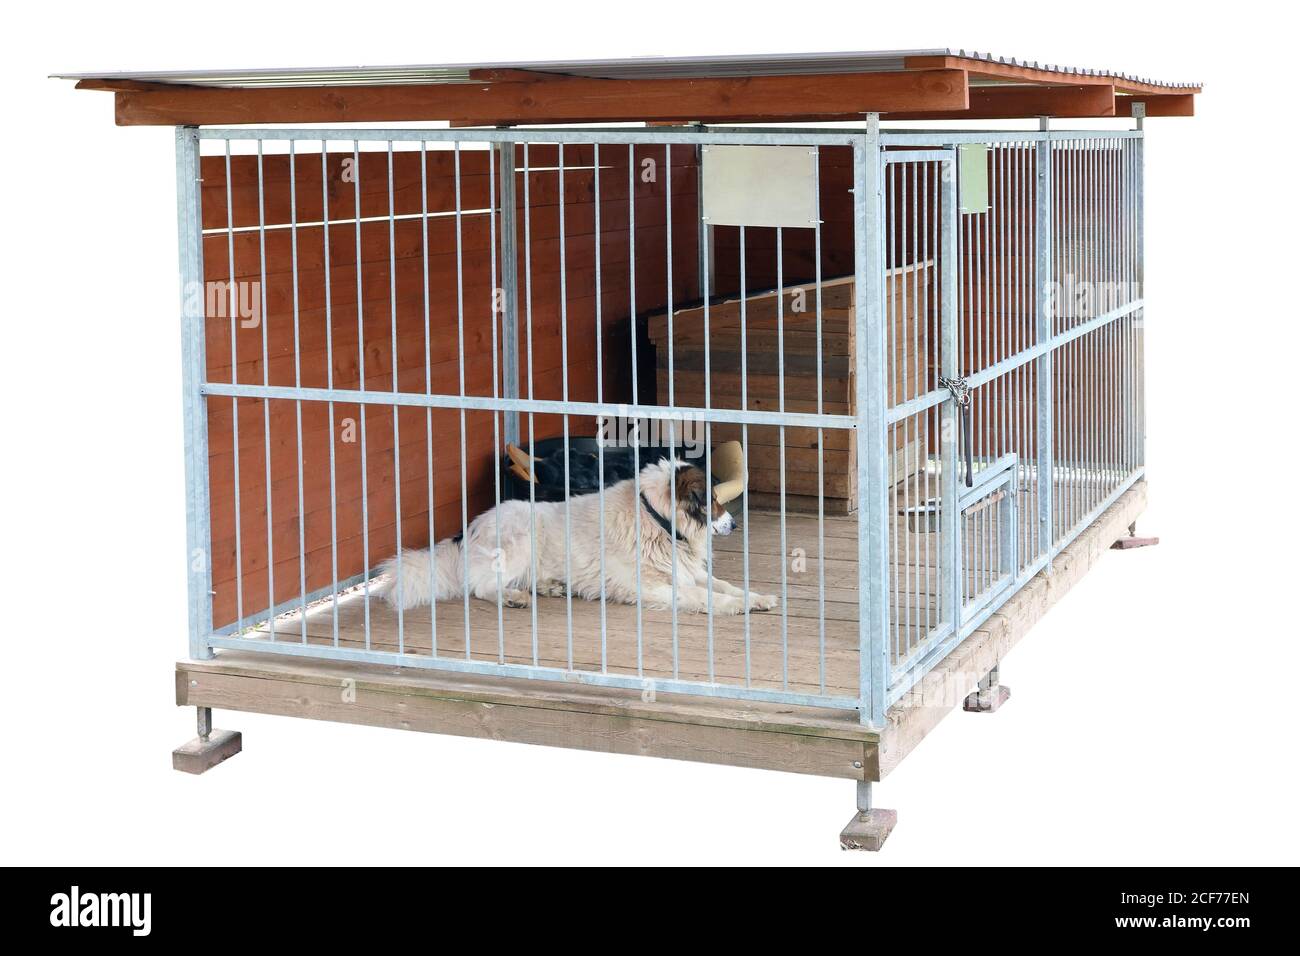 Un chien solitaire âgé vit dans une grande cage en acier. Prise de vue d'une journée ensoleillée Outsoor Banque D'Images